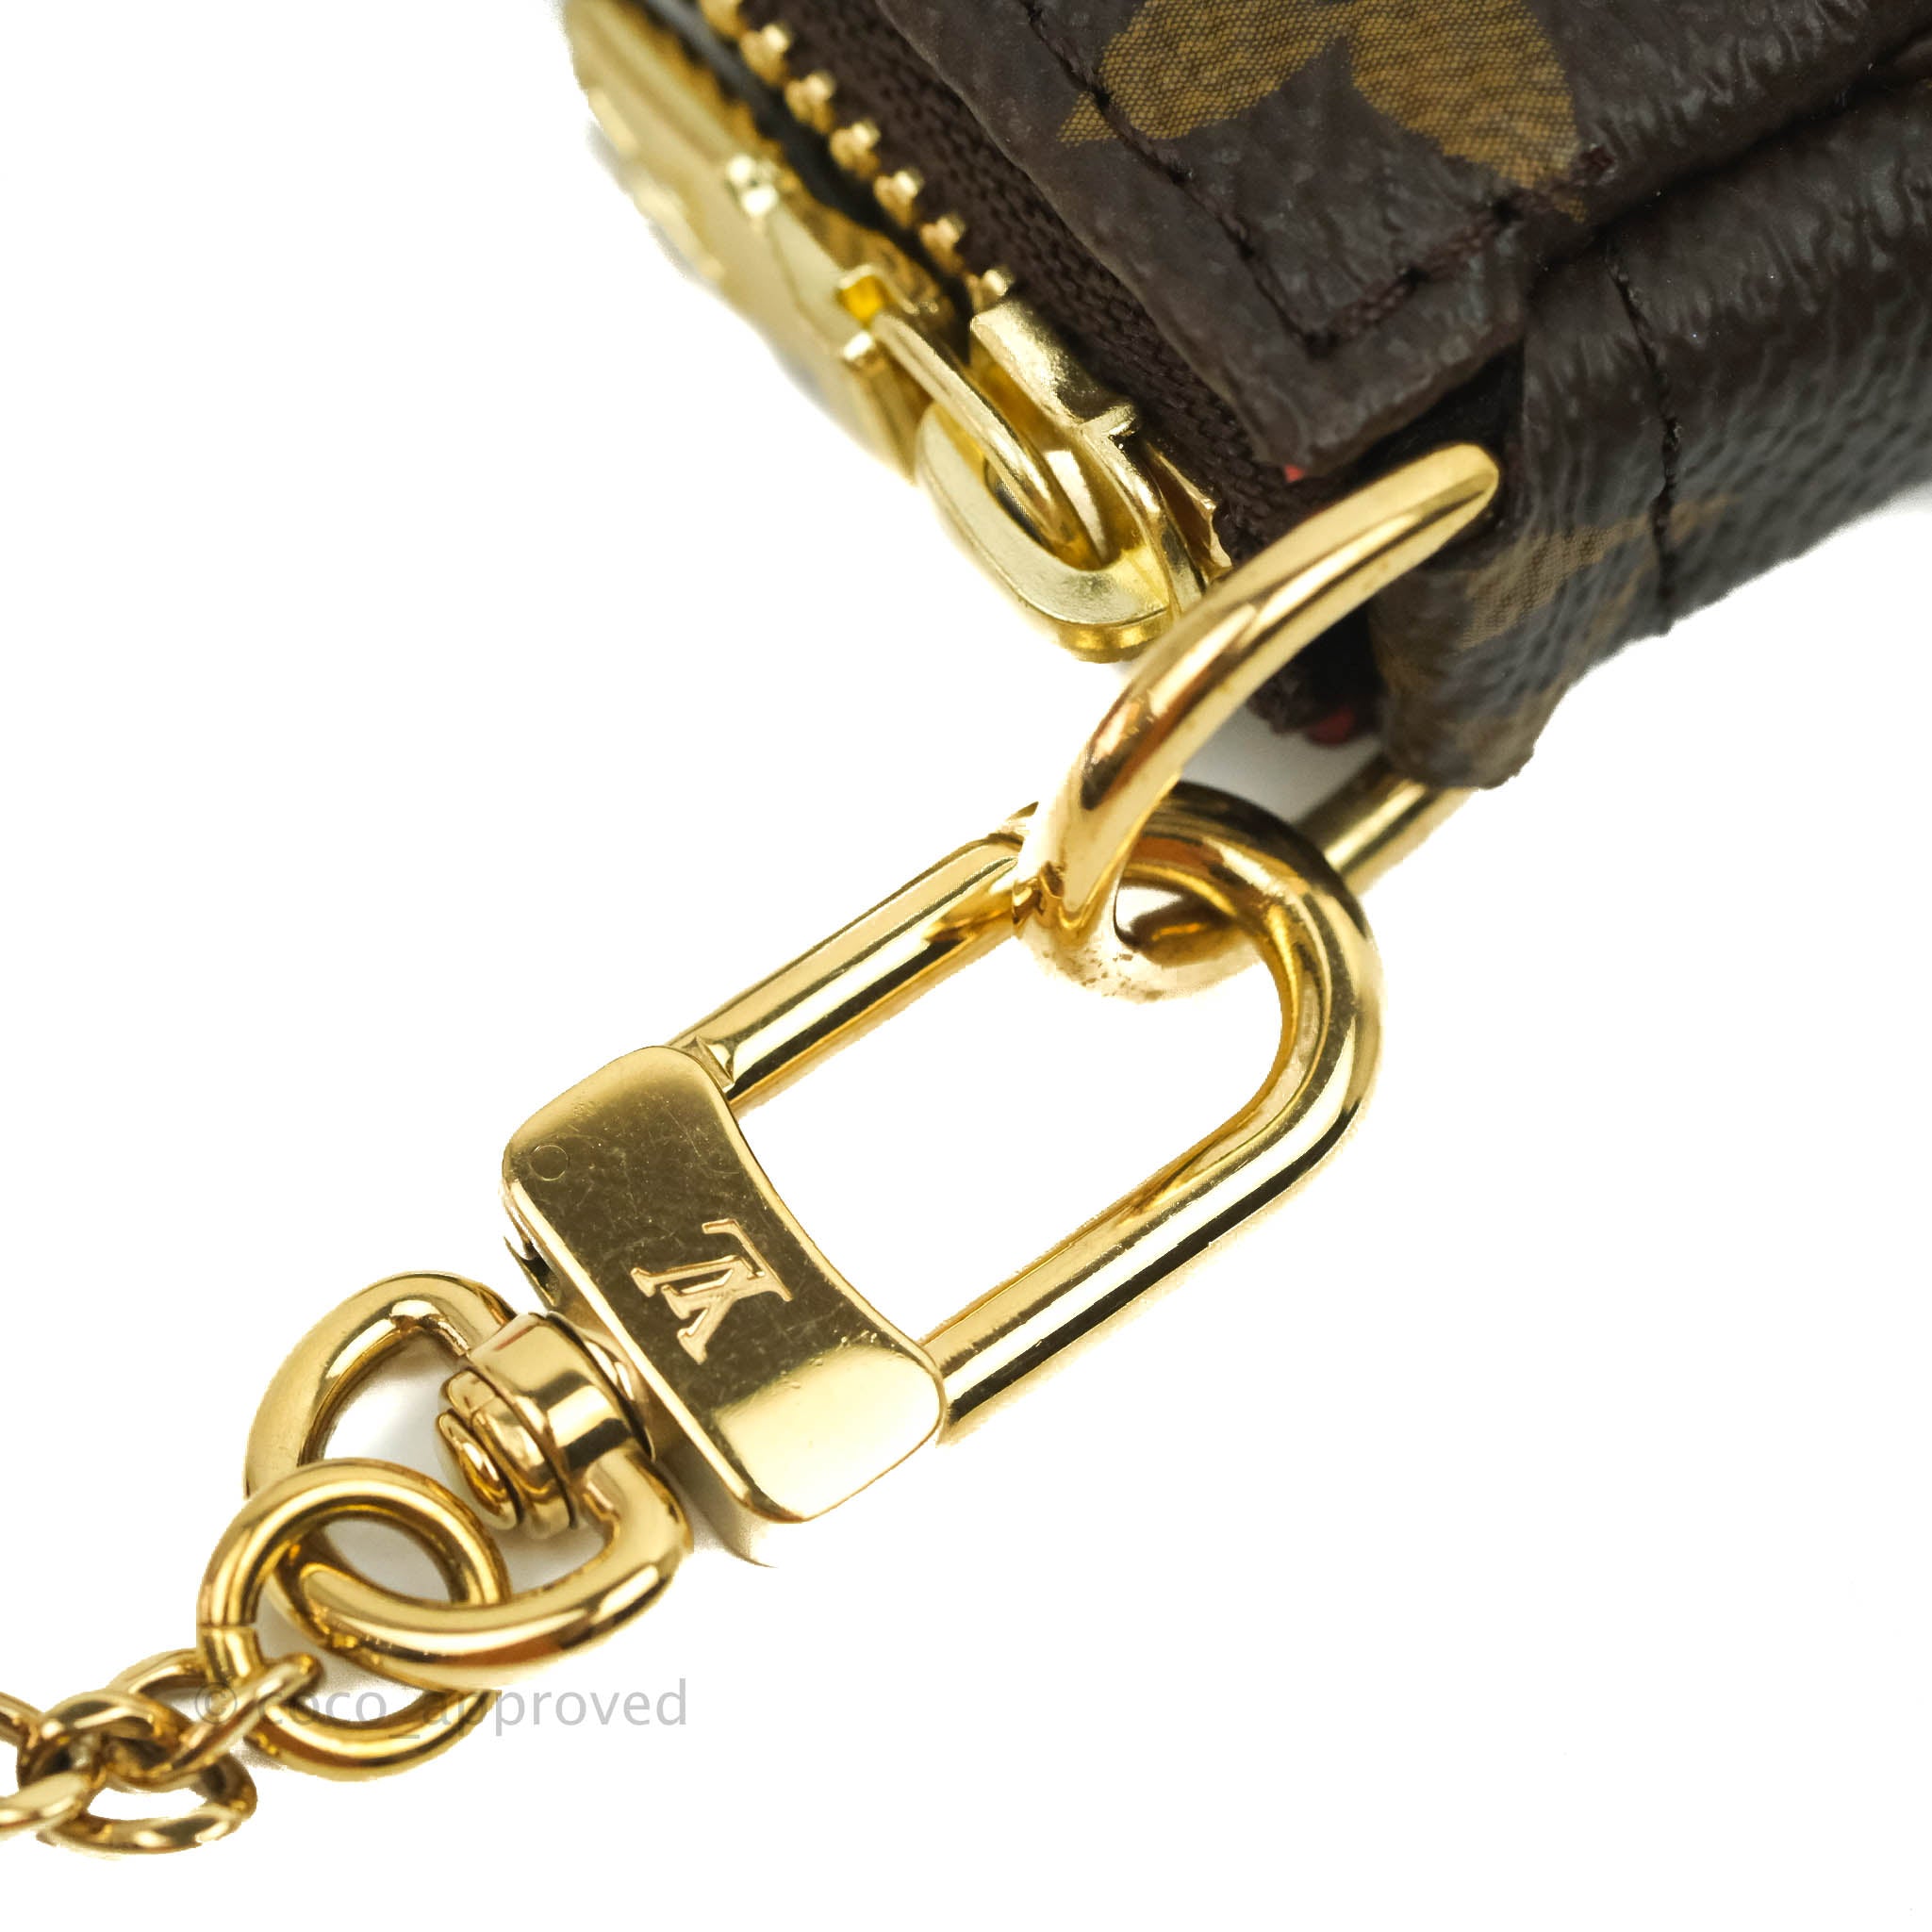 Louis Vuitton Limited Edition Mini Pochette Accessories London Scene